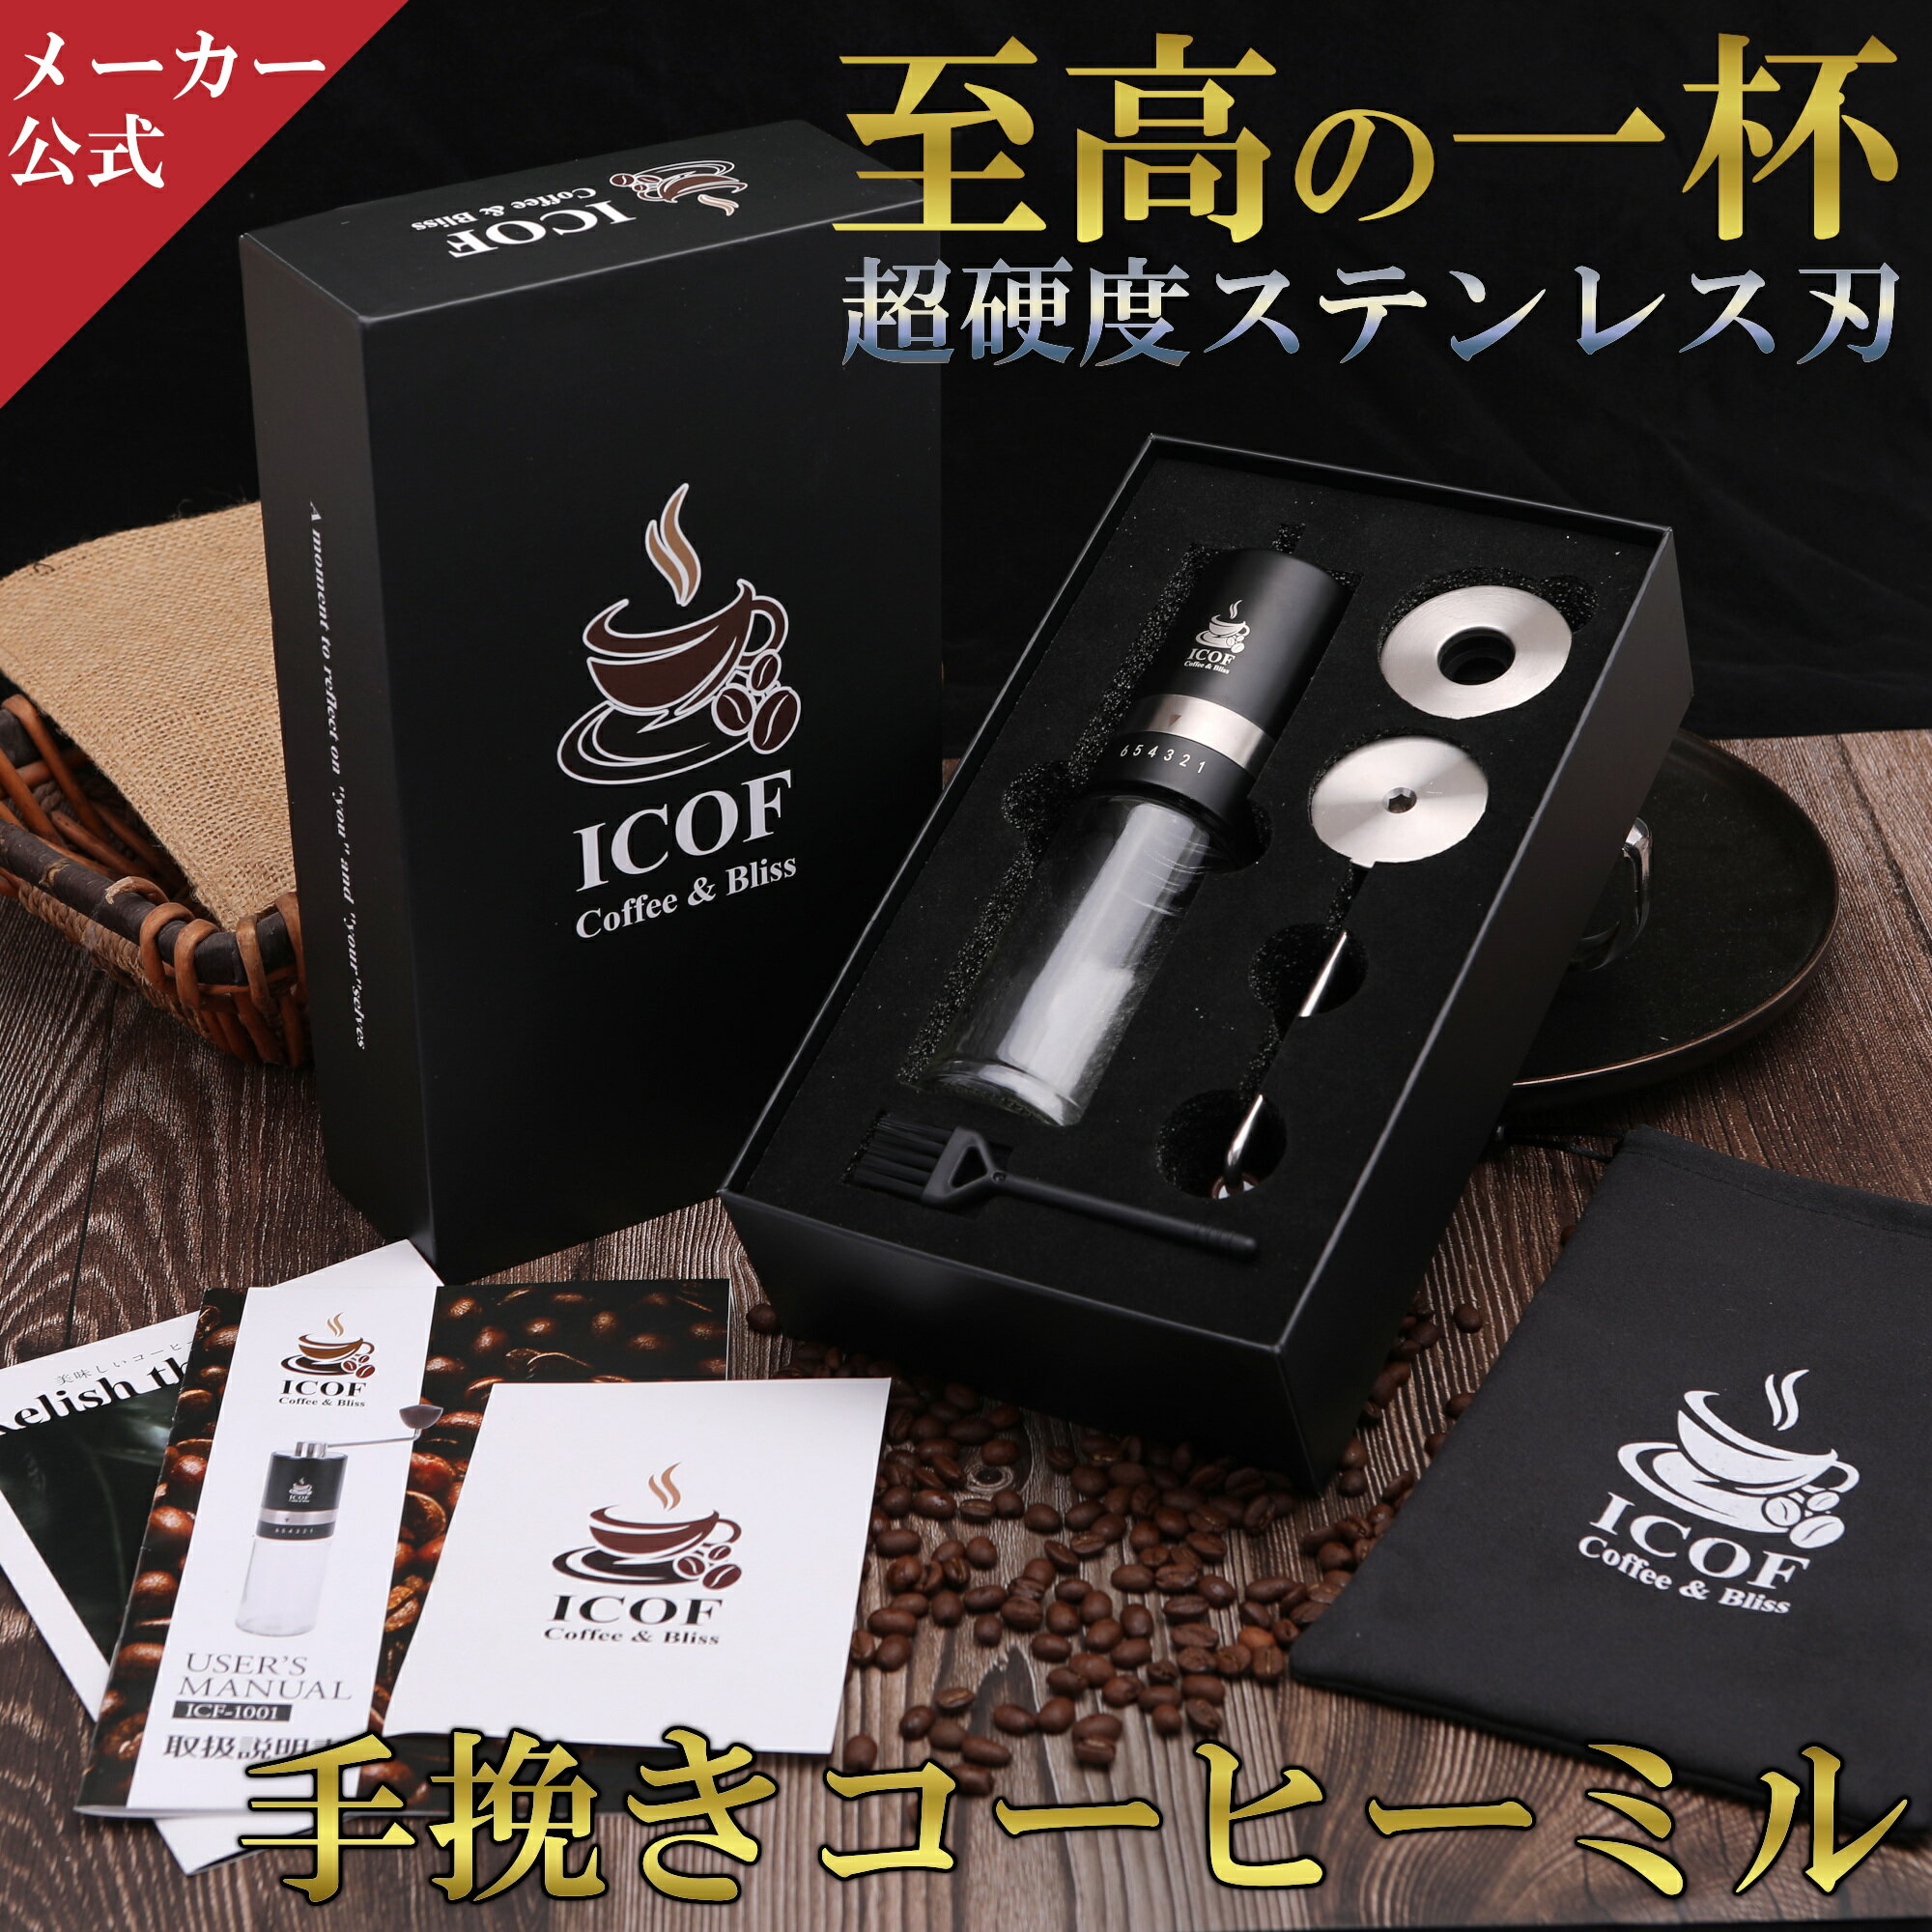 コーヒーミル 手動 TIMEMORE S3 ブラック コーヒーグラインダー タイムモア 正規品 MLB700BK 手動式 豆挽き 携帯型